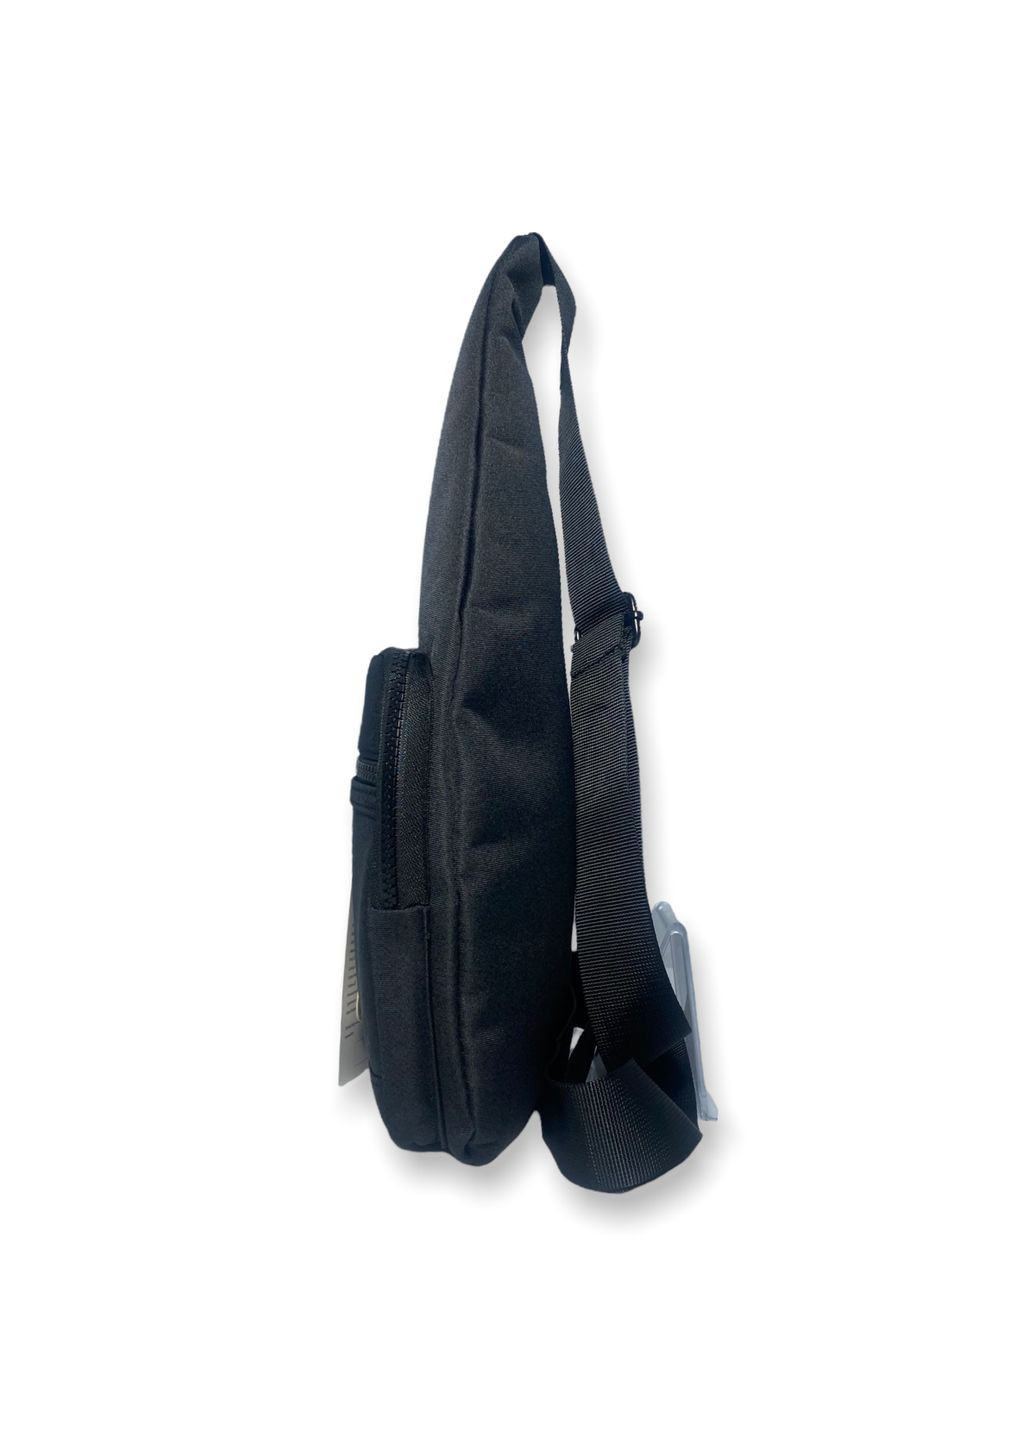 Чоловіча сумкаслінг, 23208, одне основне відділення, 3 додаткові кишені, розміри: 38х18х4см, чорна Jack Lu (286421656)